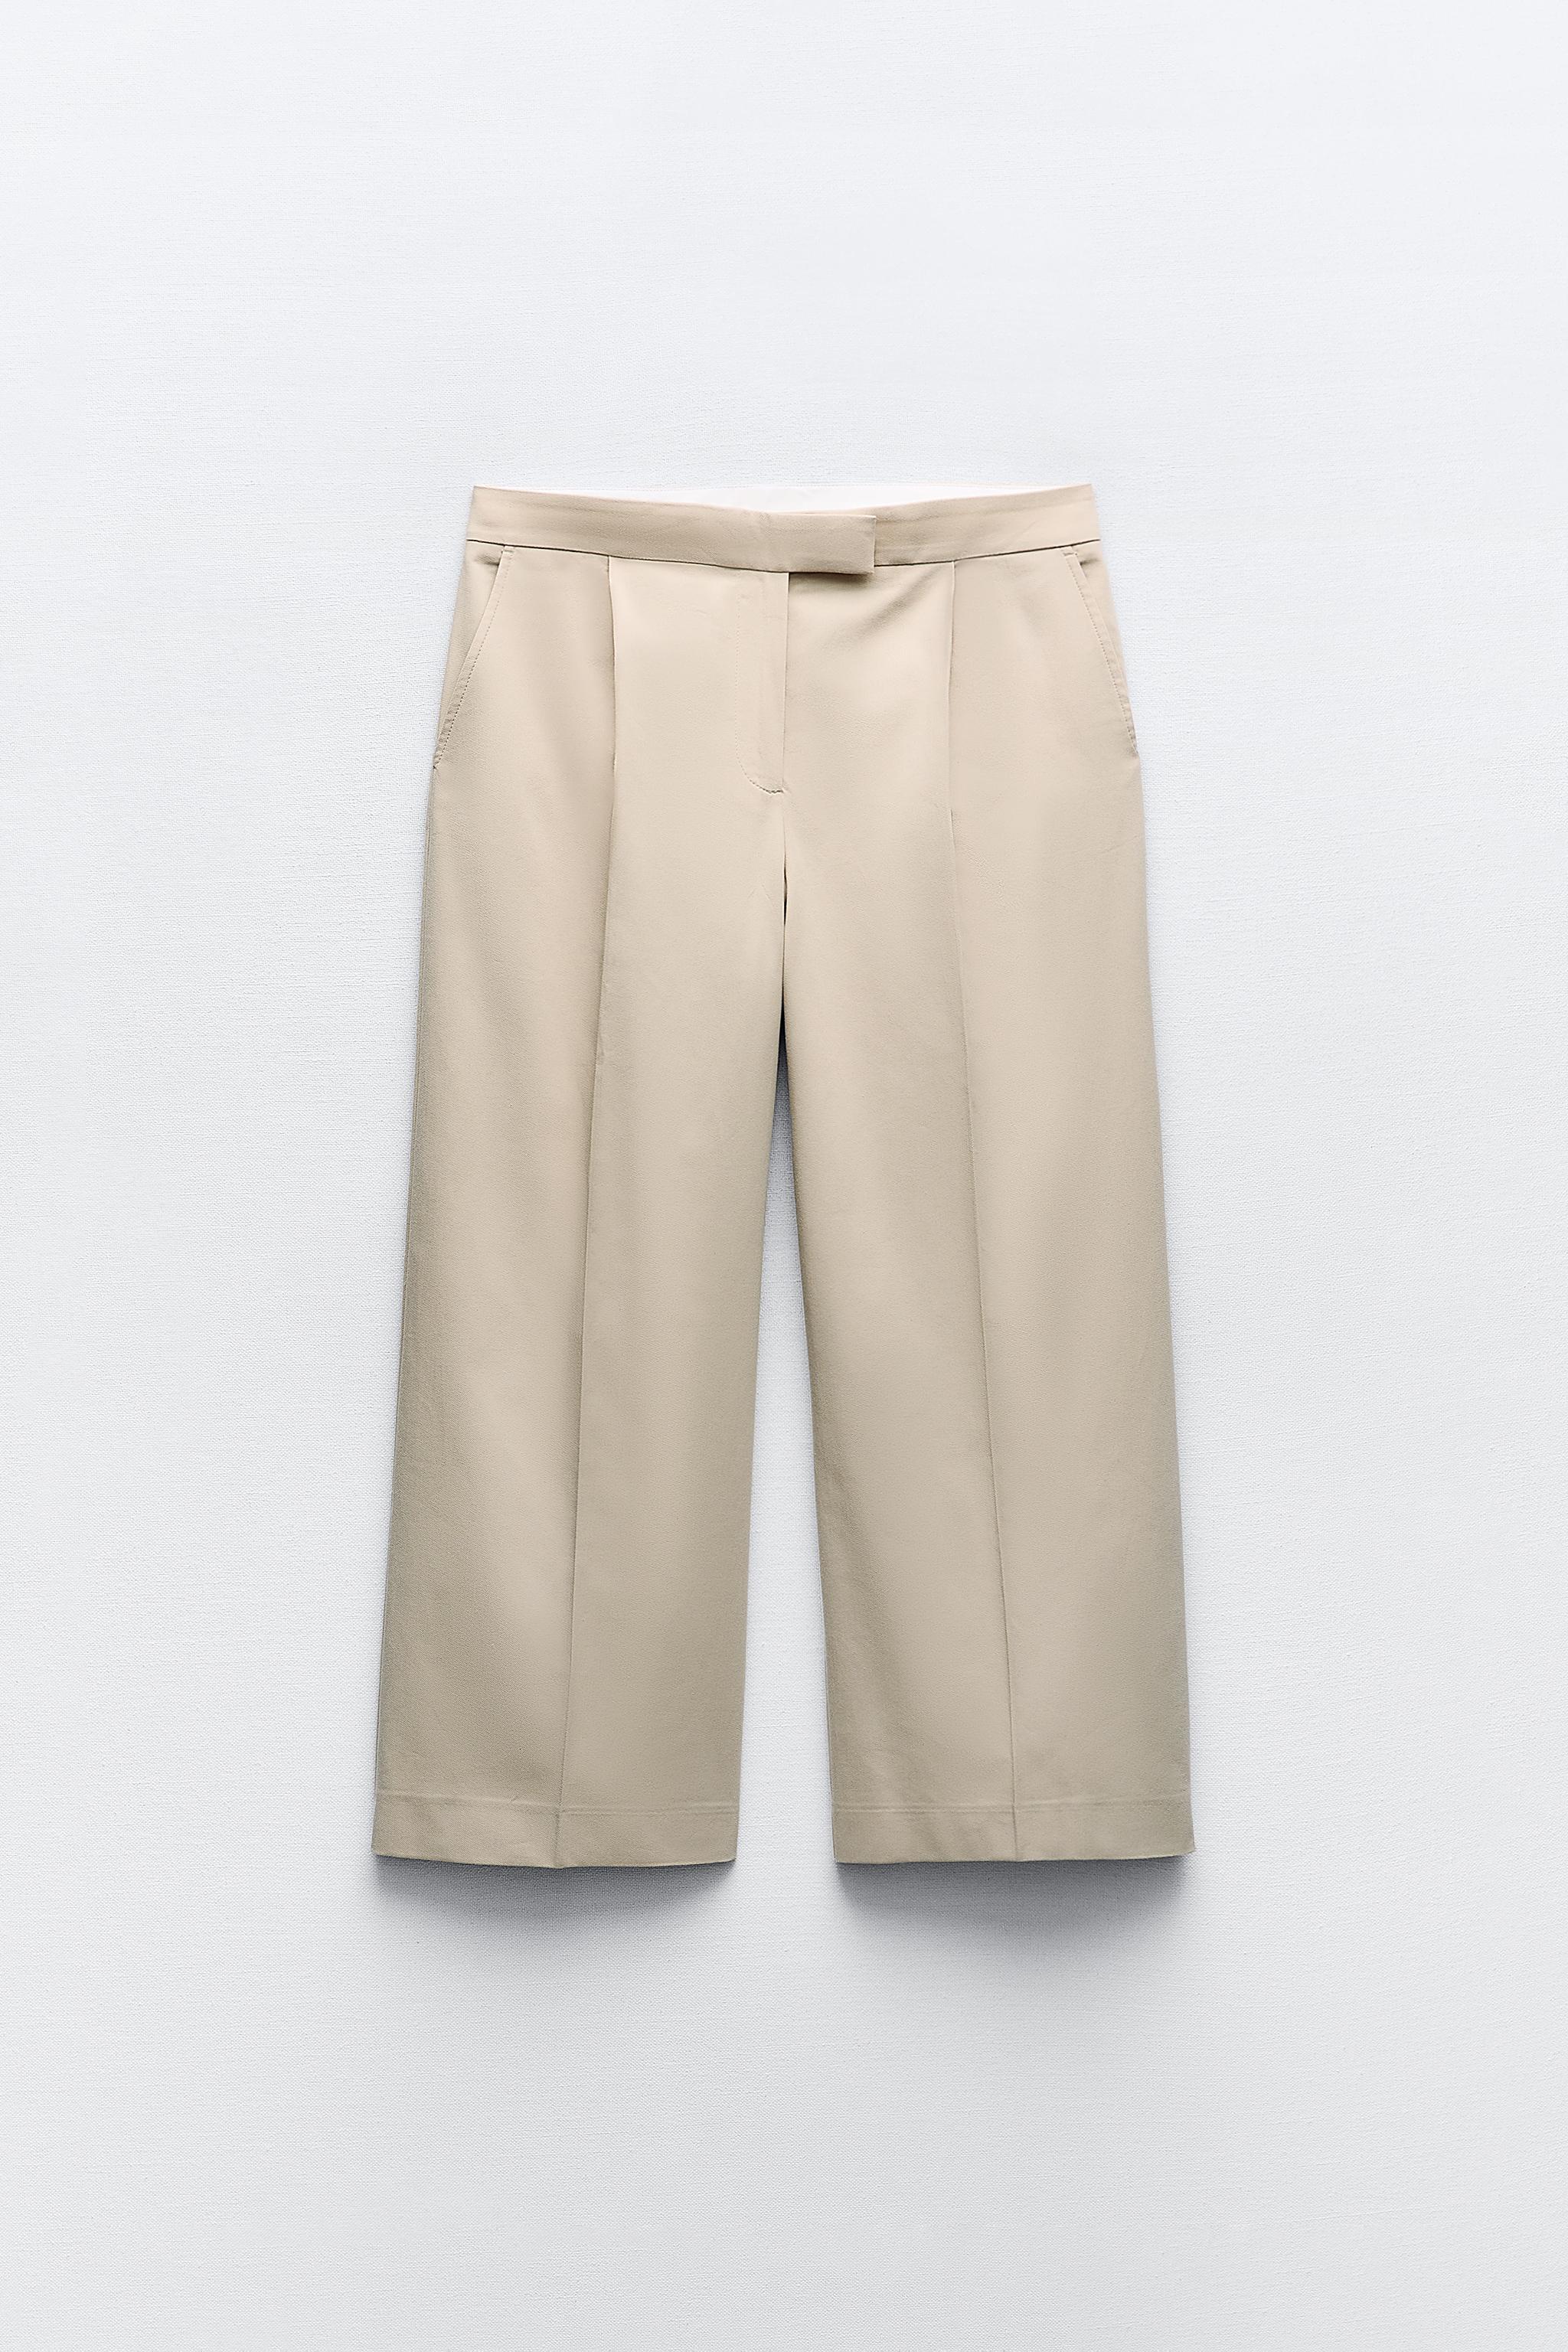 Zara, Pants & Jumpsuits, Nwt Zara Wax Effect High Waist Wide Leg Pants Xs